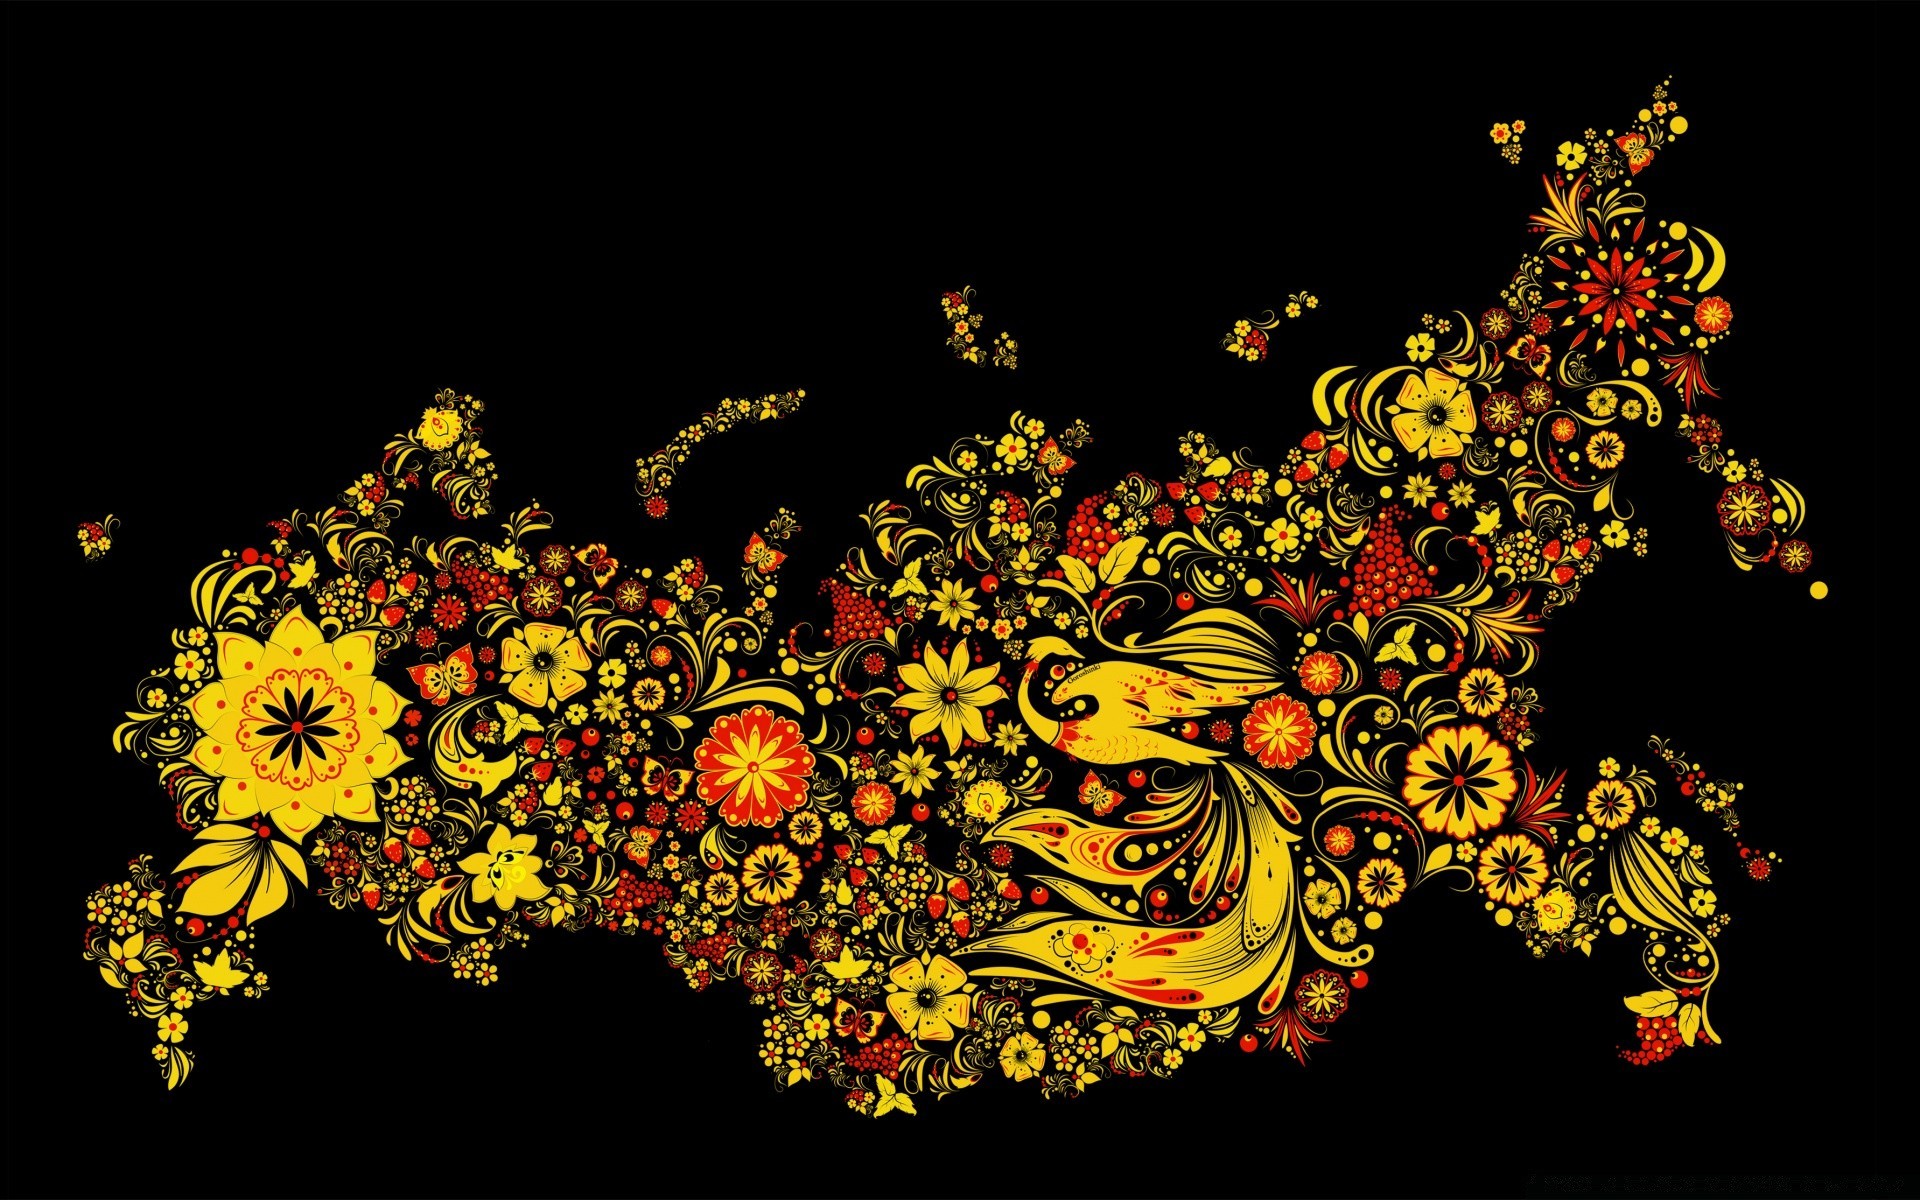 black flower illustration decoration abstract pattern design desktop element art graphic floral leaf